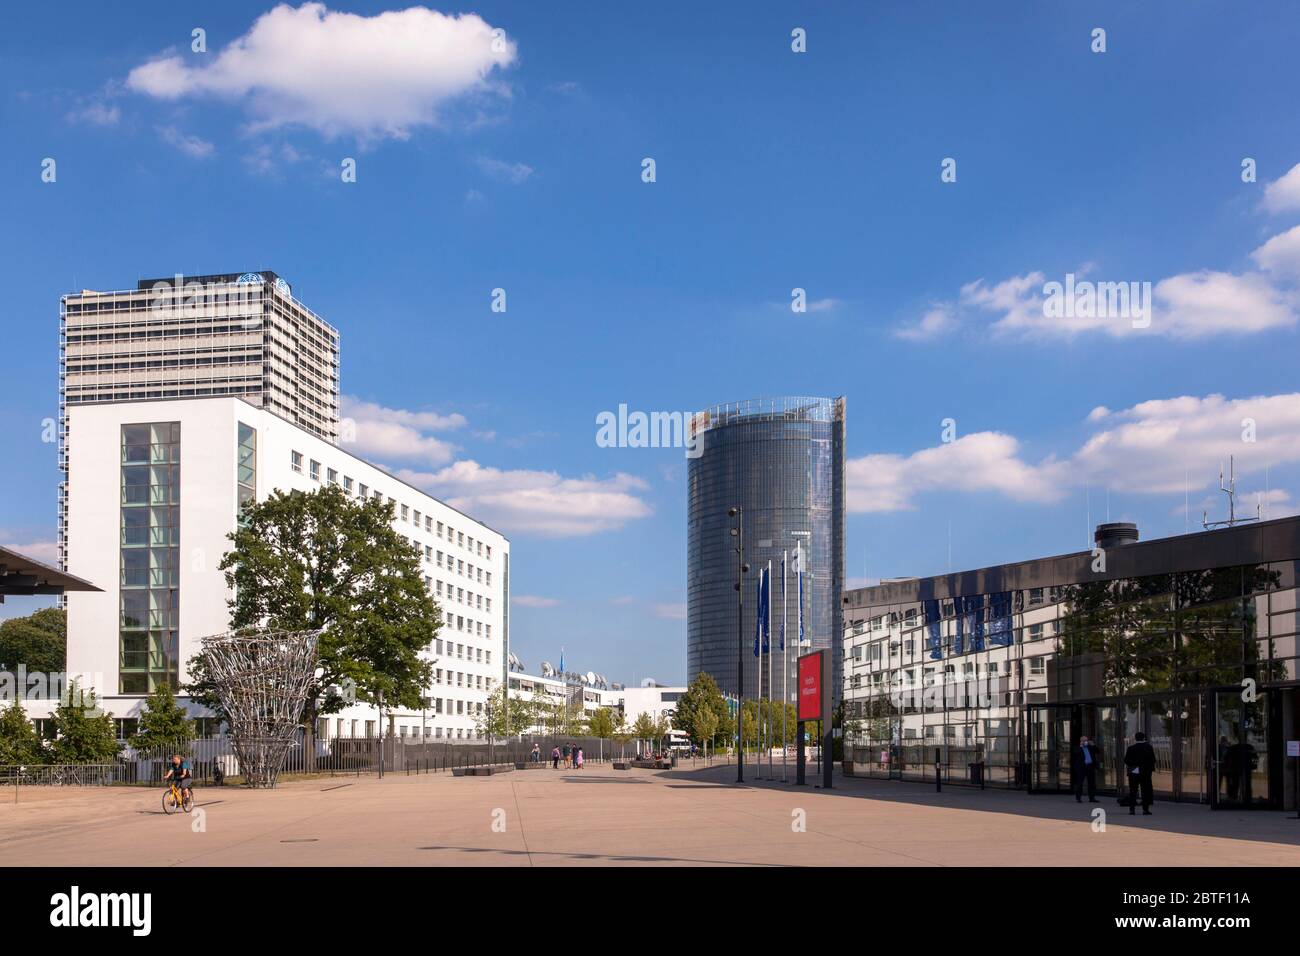 La torre de correos, sede de la empresa de logística Deutsche Post DHL Group, dejó el campus de la ONU, a la derecha del World Conference Center, Platz der Verein Foto de stock